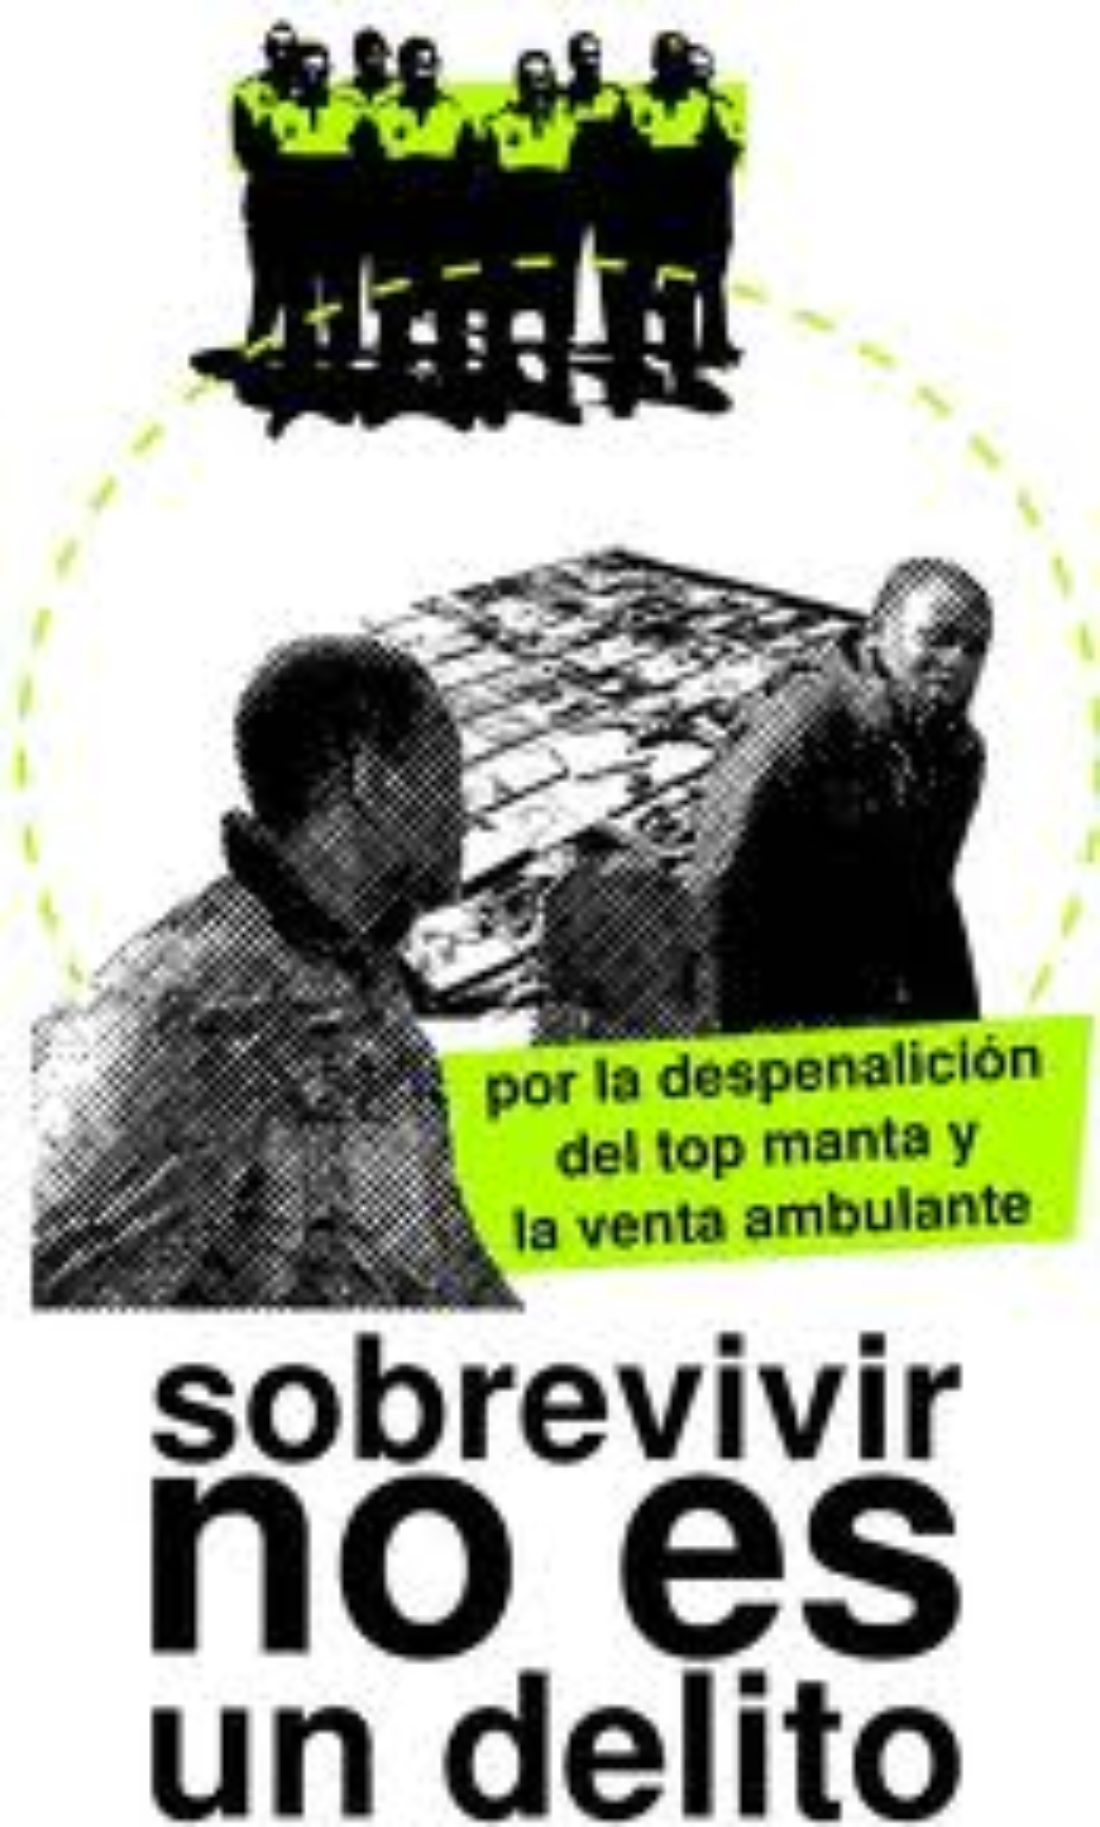 17 enero, Madrid : Taller de derechos de los trabajadores del TOP MANTA